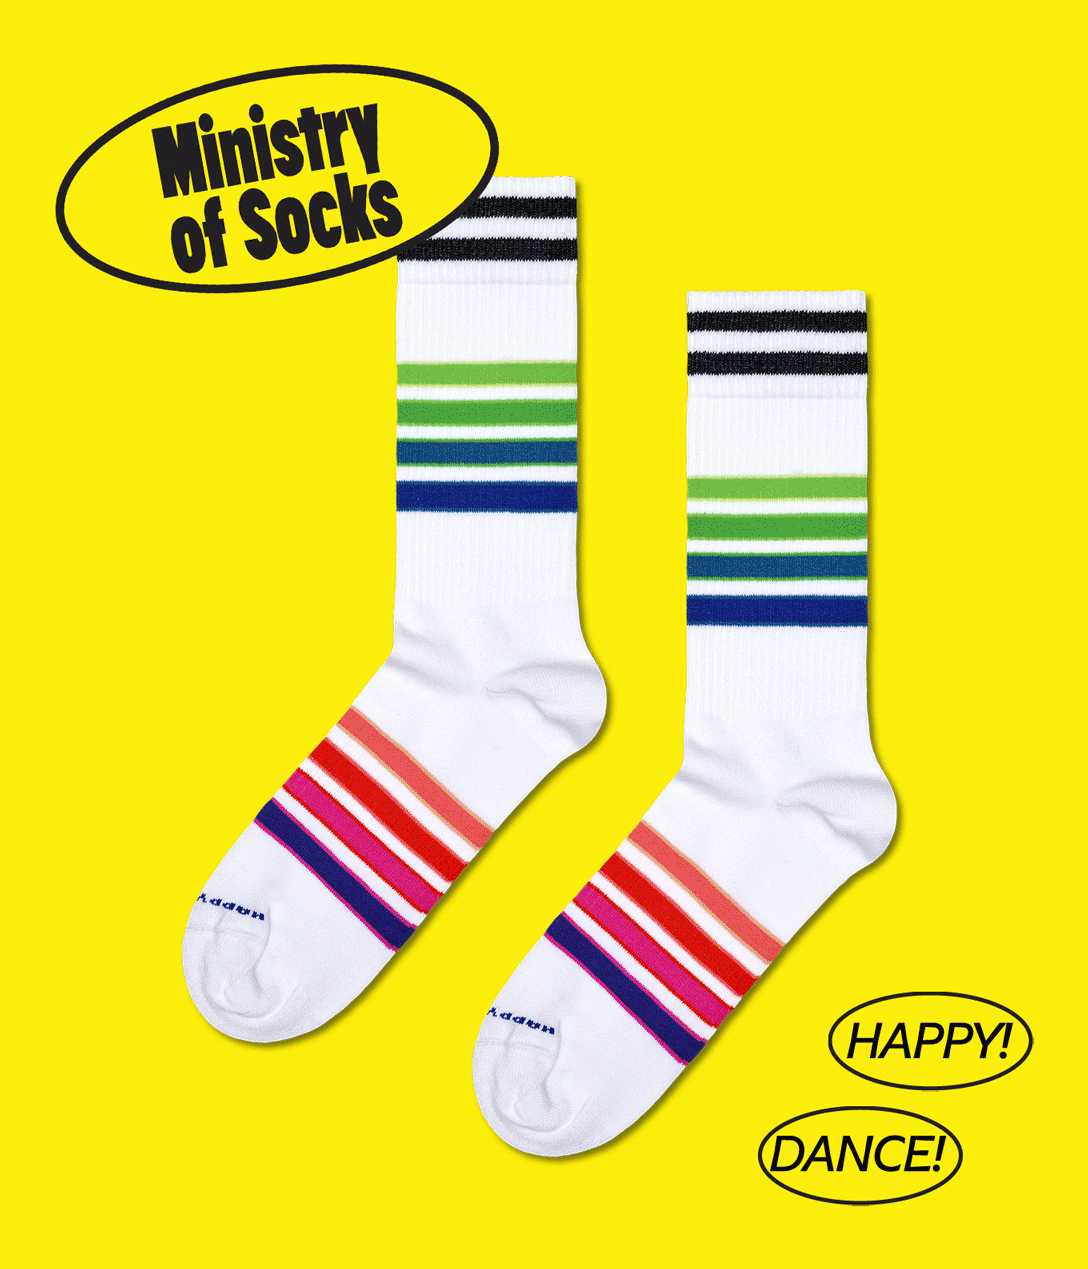 Ministry Of Socks